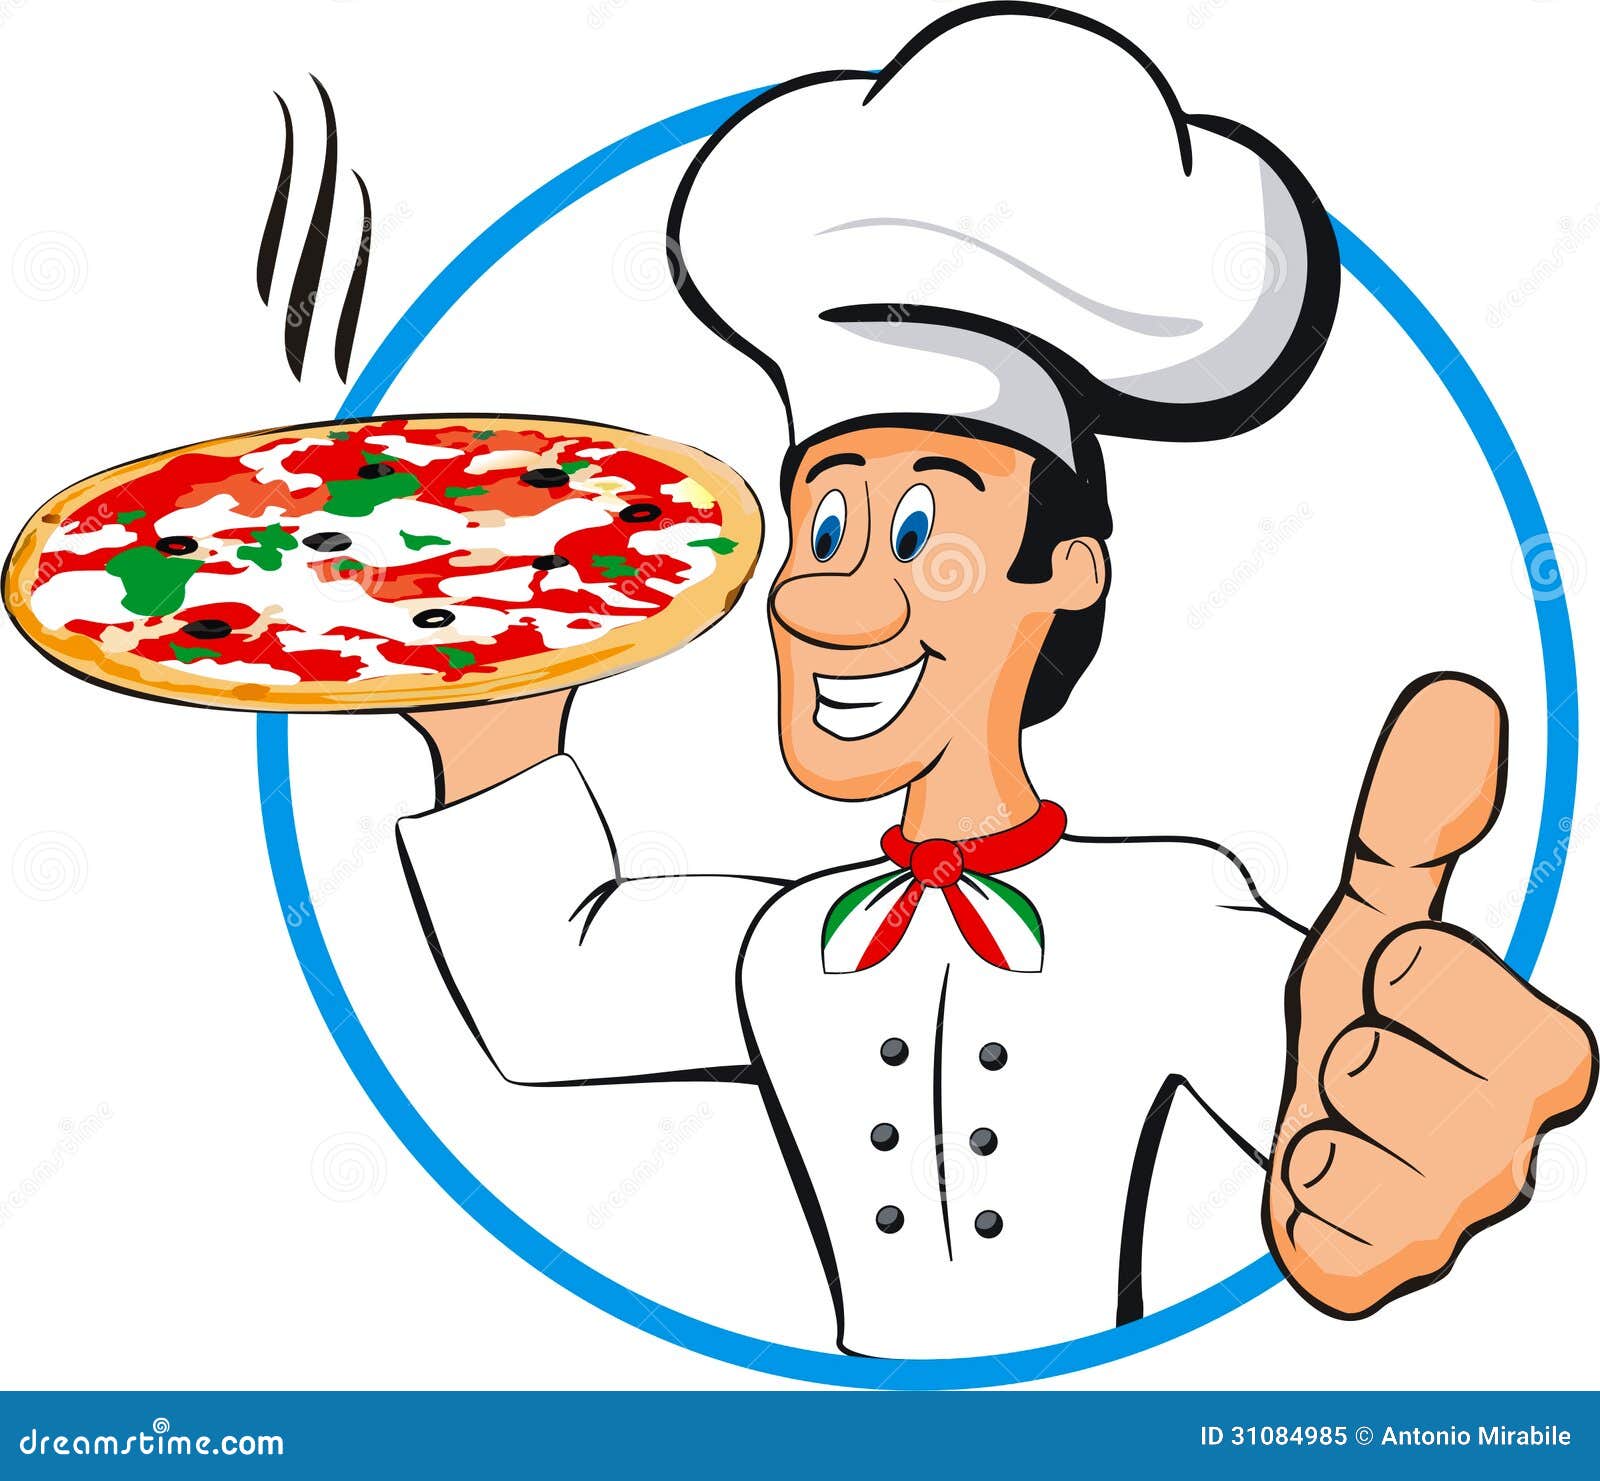 clipart pizza chef - photo #8